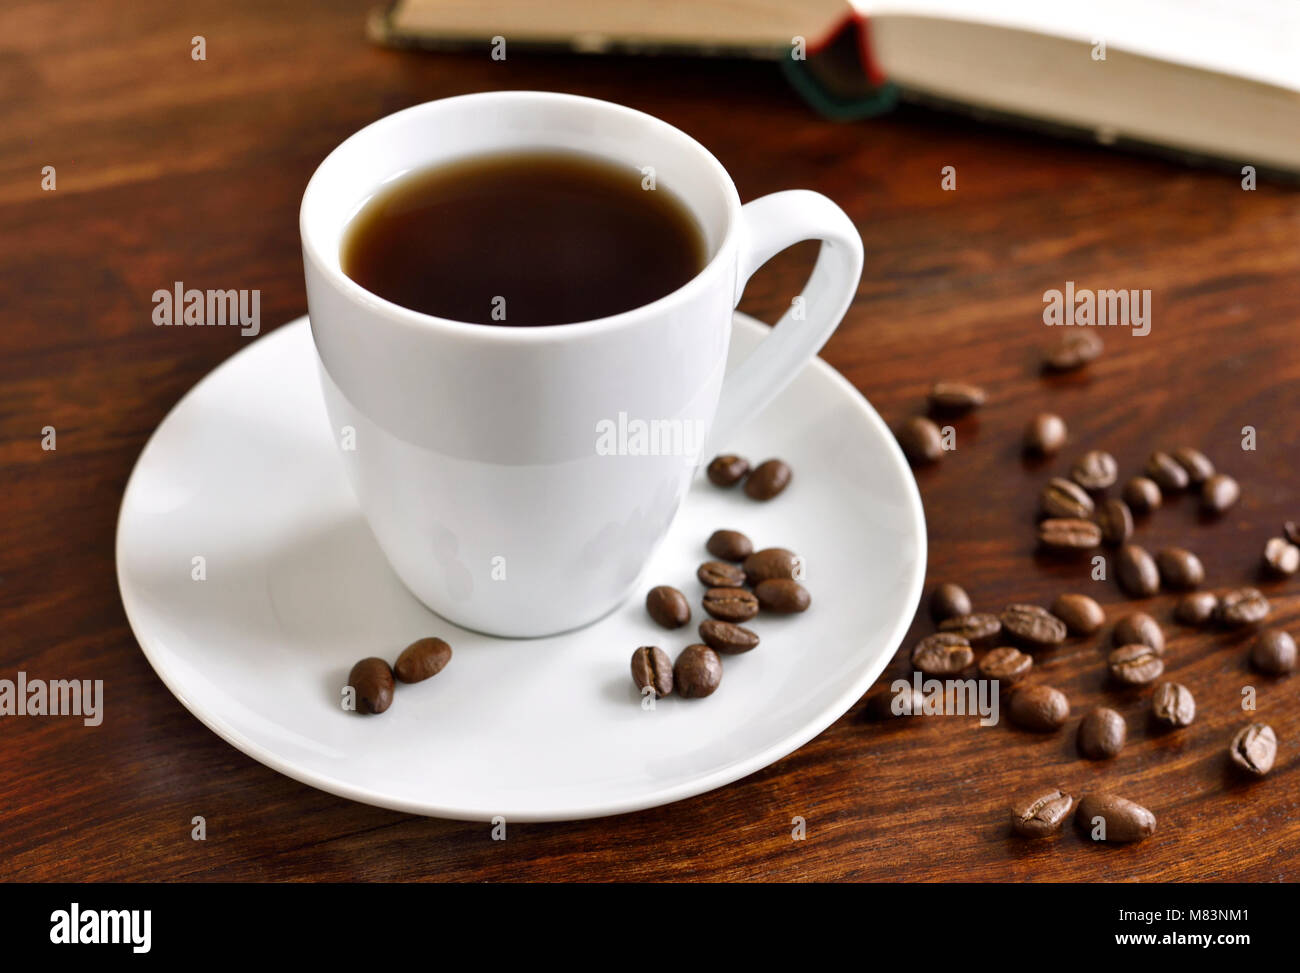 Frühstück Szene mit Kaffeetasse, offenes Buch und Kaffeebohnen auf einem Holztisch. Morgen Szene mit heißem Kaffee. Stockfoto